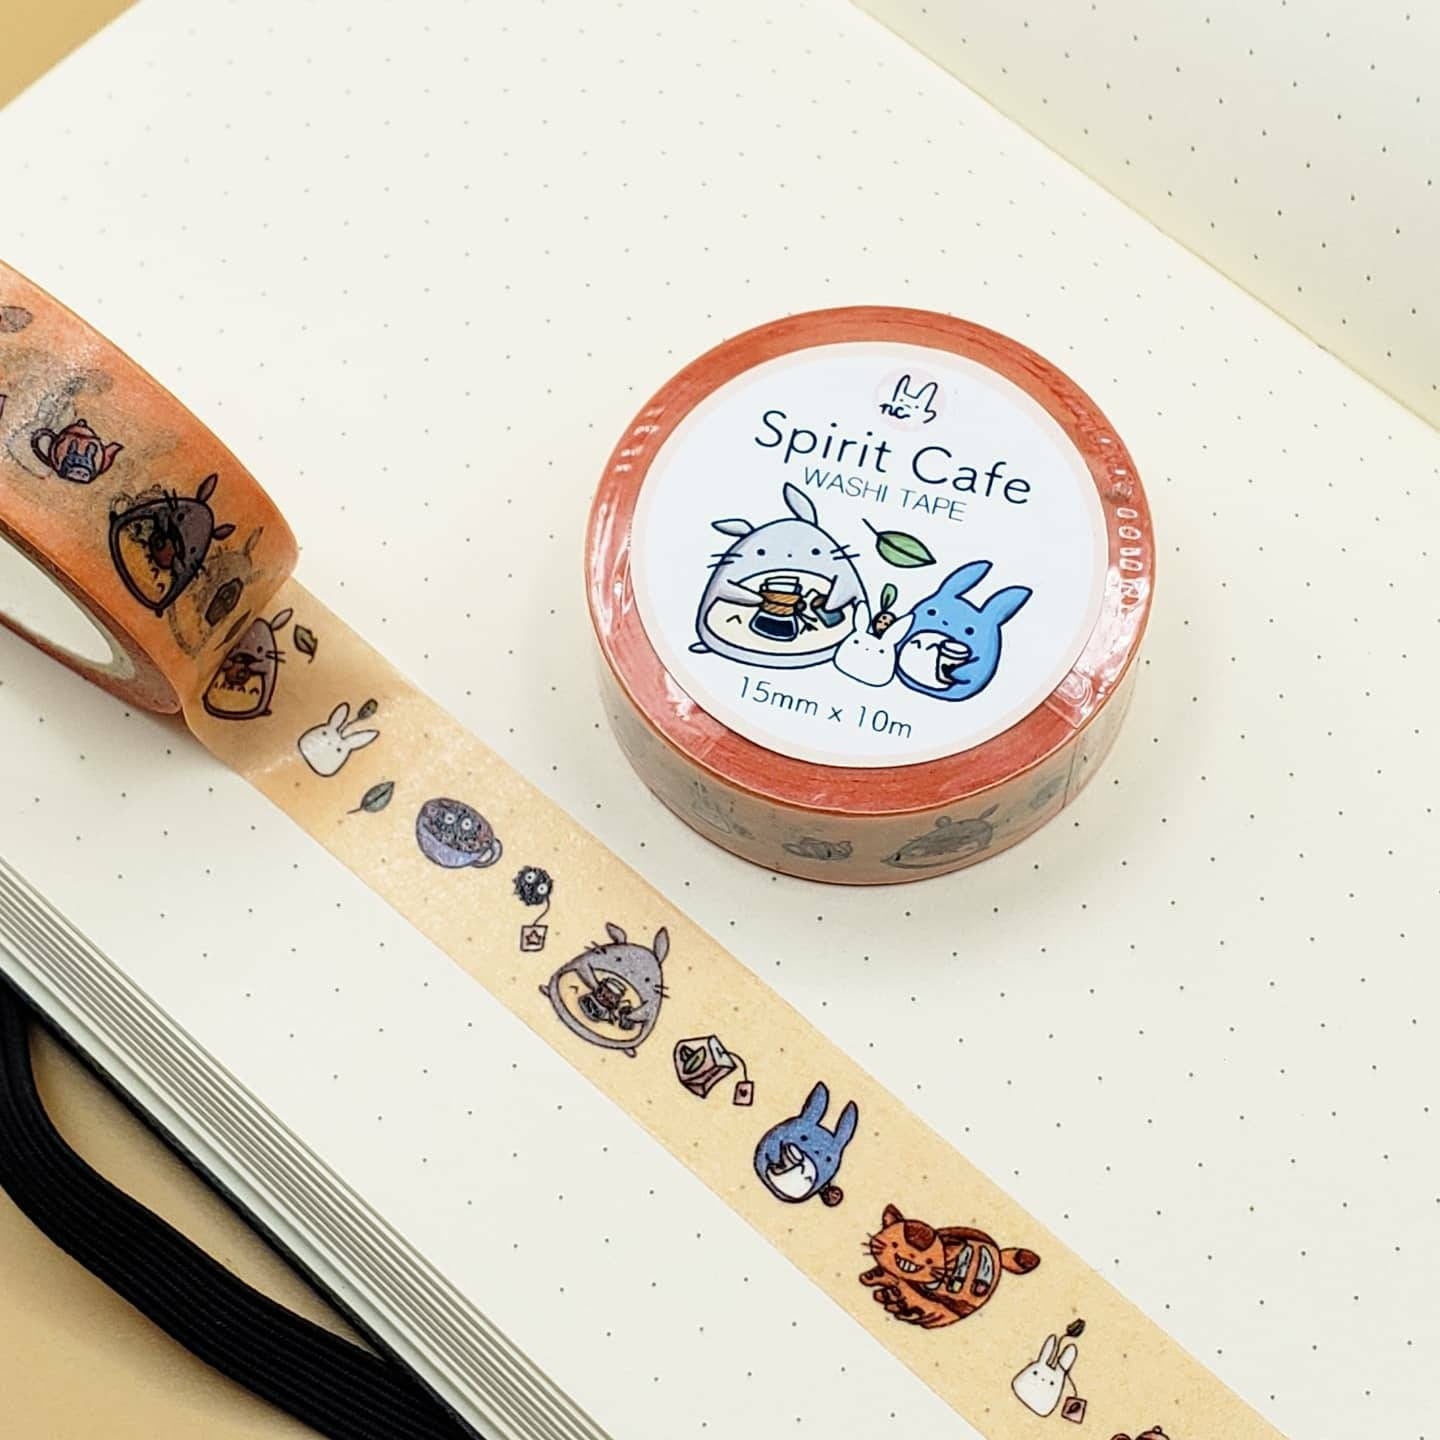 Washi Tape - Cat Cafe